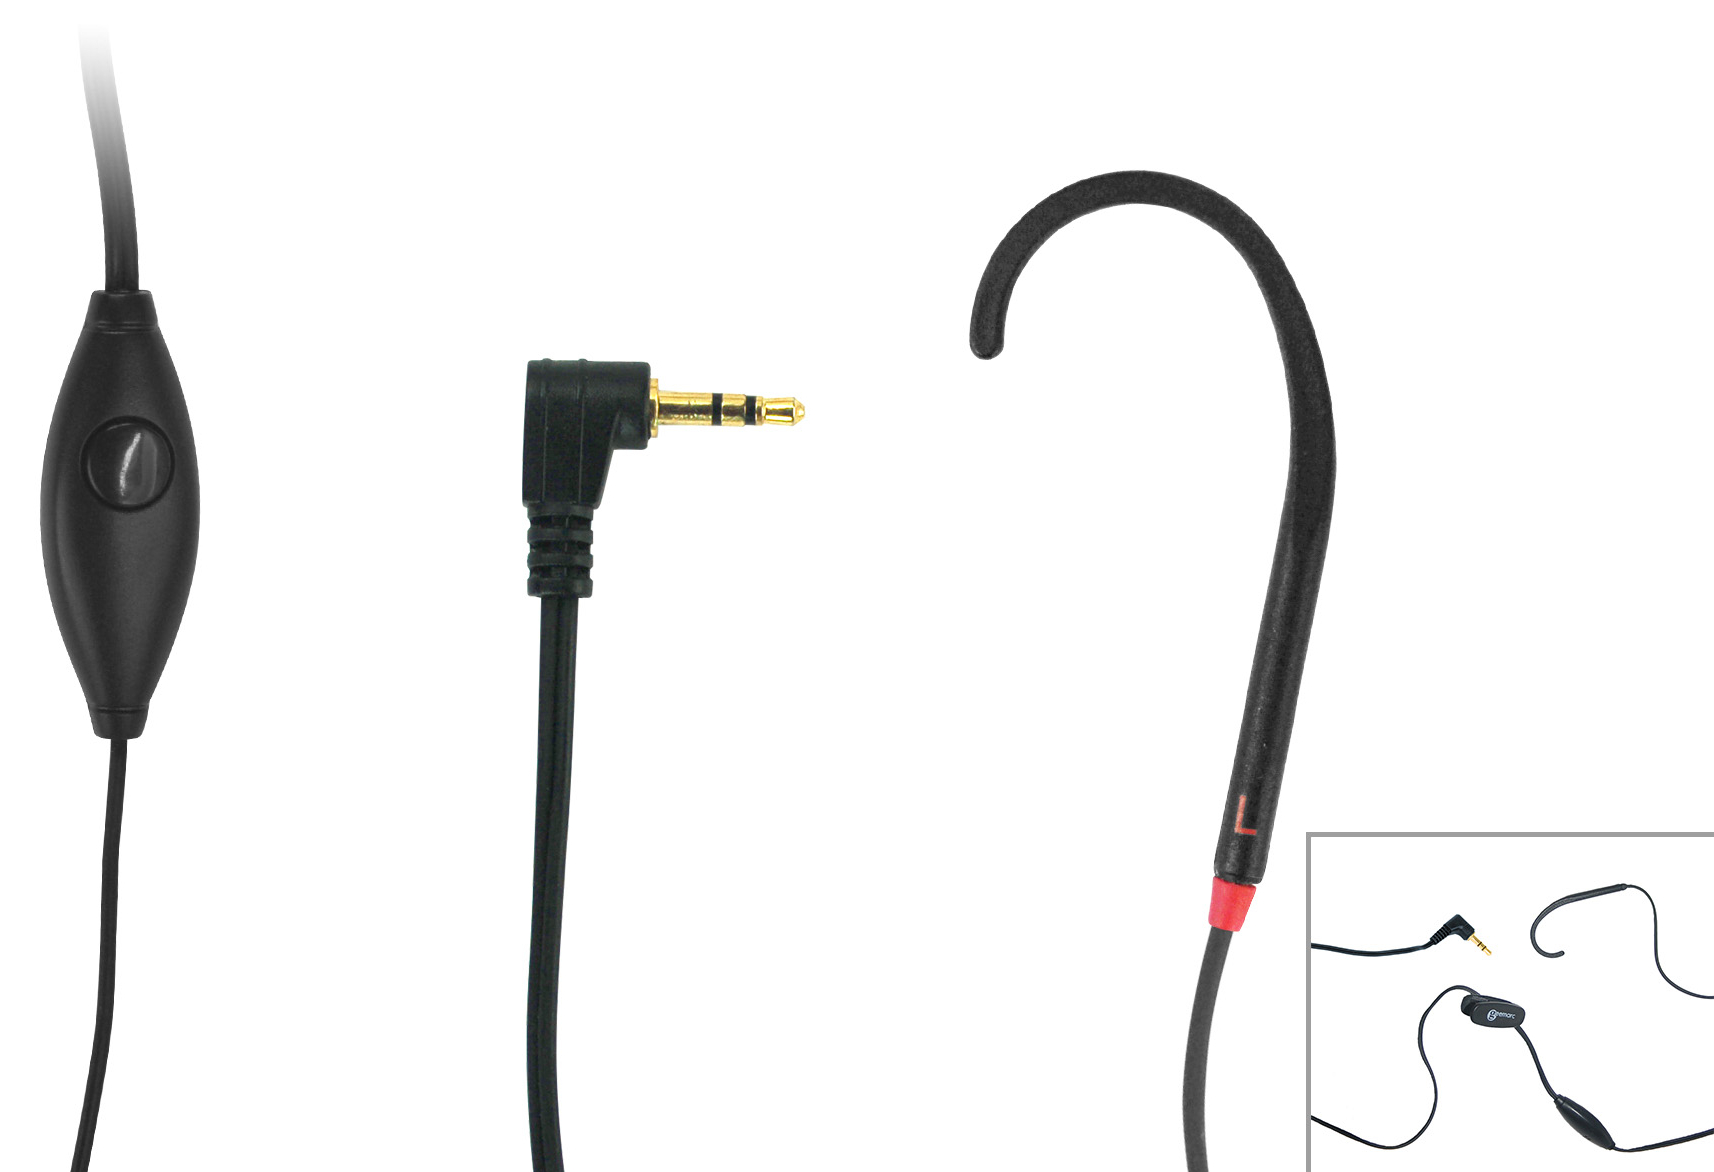 Cl Hook T-coil Ear Hooks For Mobile Phones 2